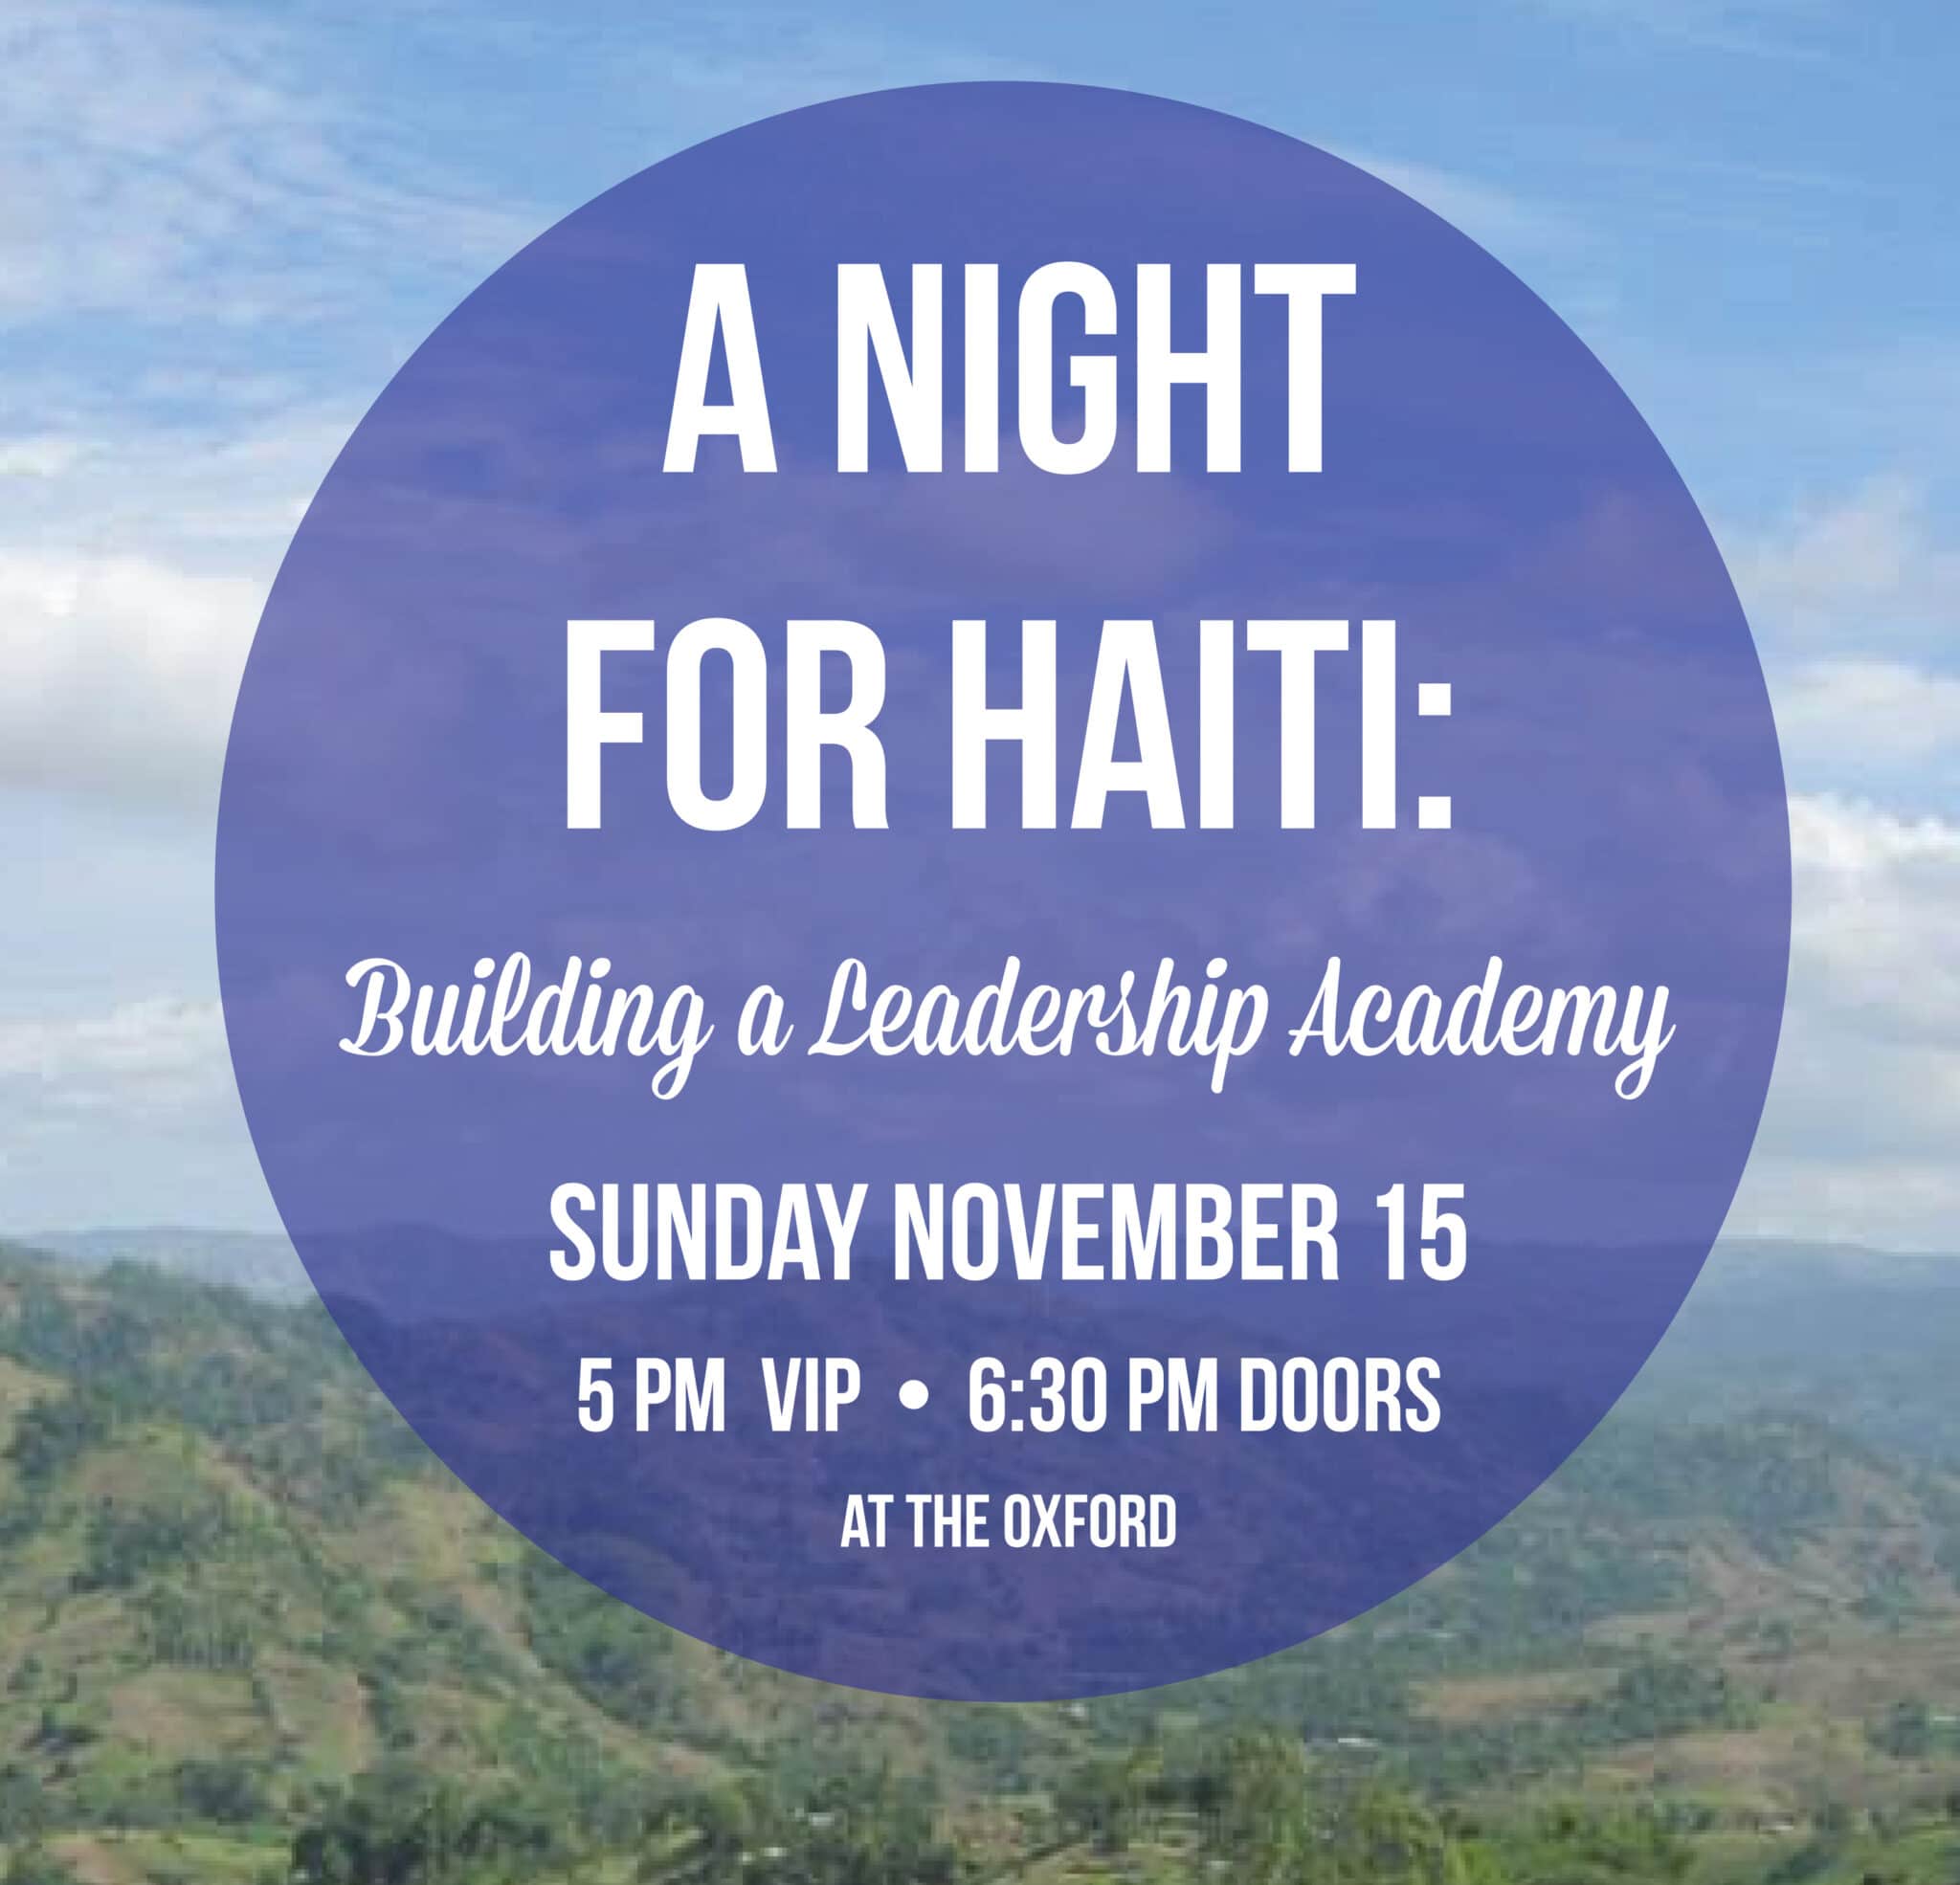 A Night for Haiti: Building a Leadership Academy